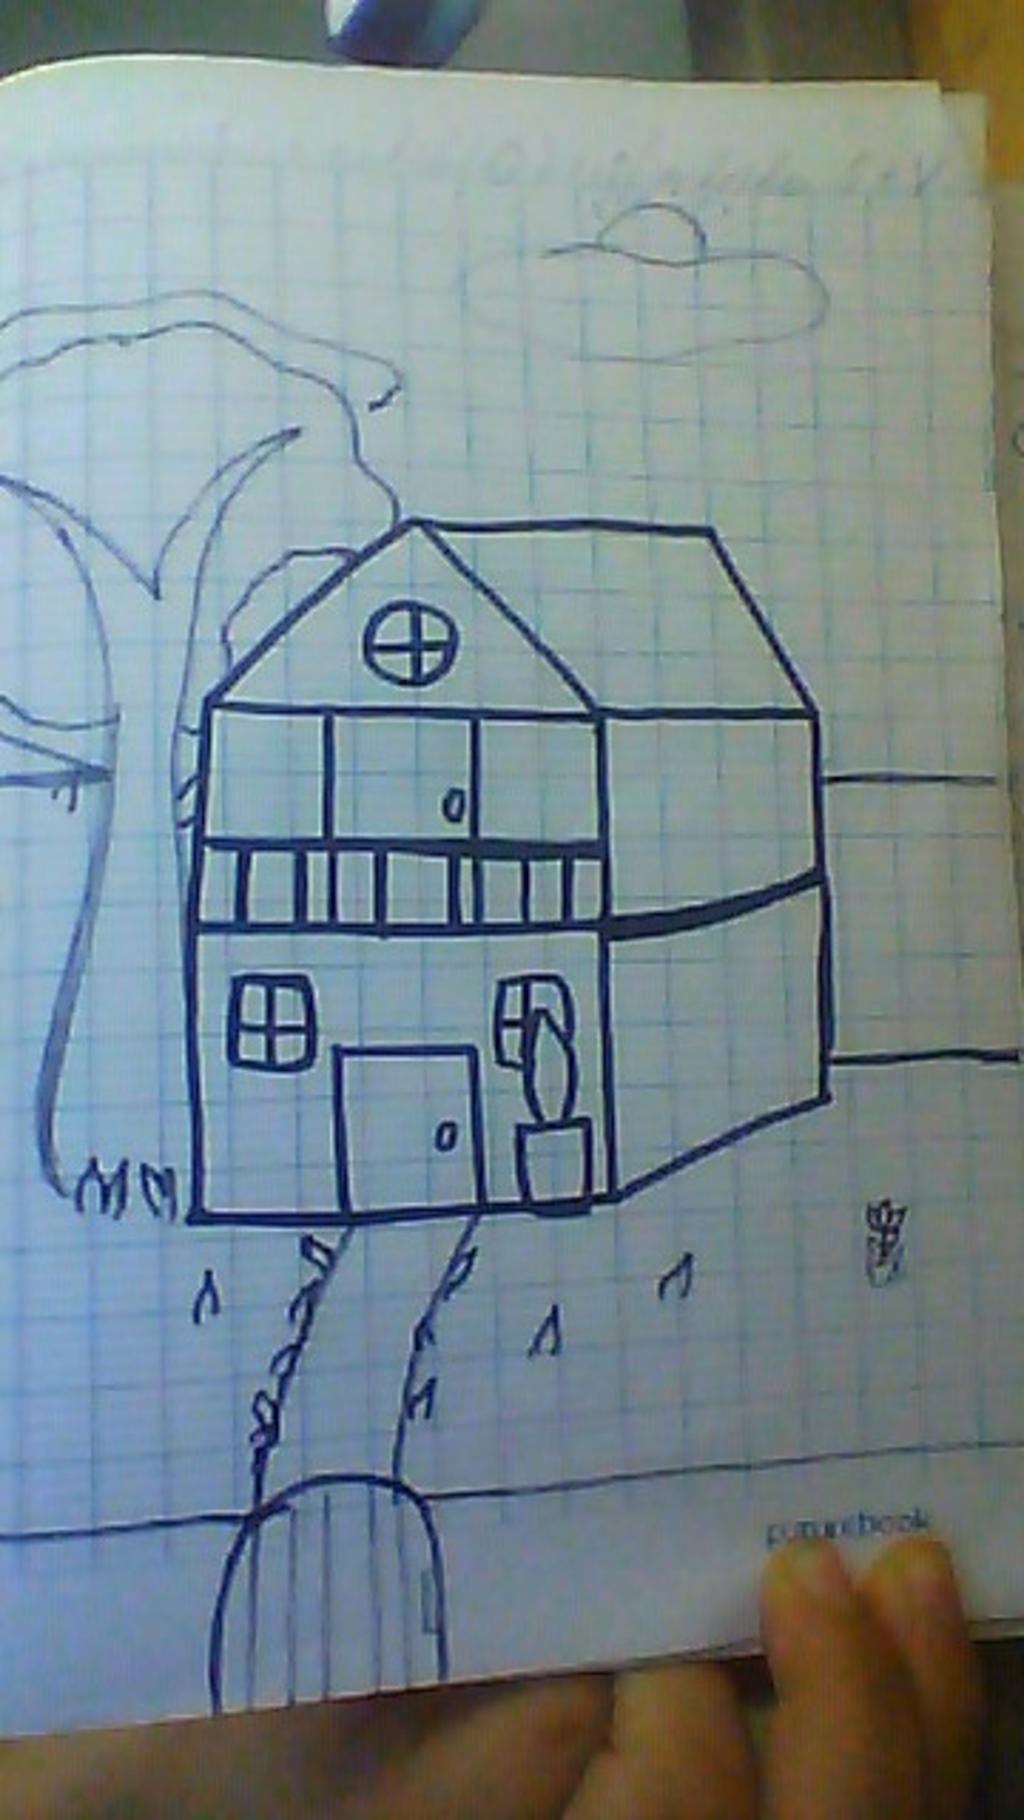 Bạn có đam mê vẽ tranh? Hãy thử vẽ một bức tranh về ngôi nhà mơ ước của mình và cùng nhìn lại nó với hình ảnh \